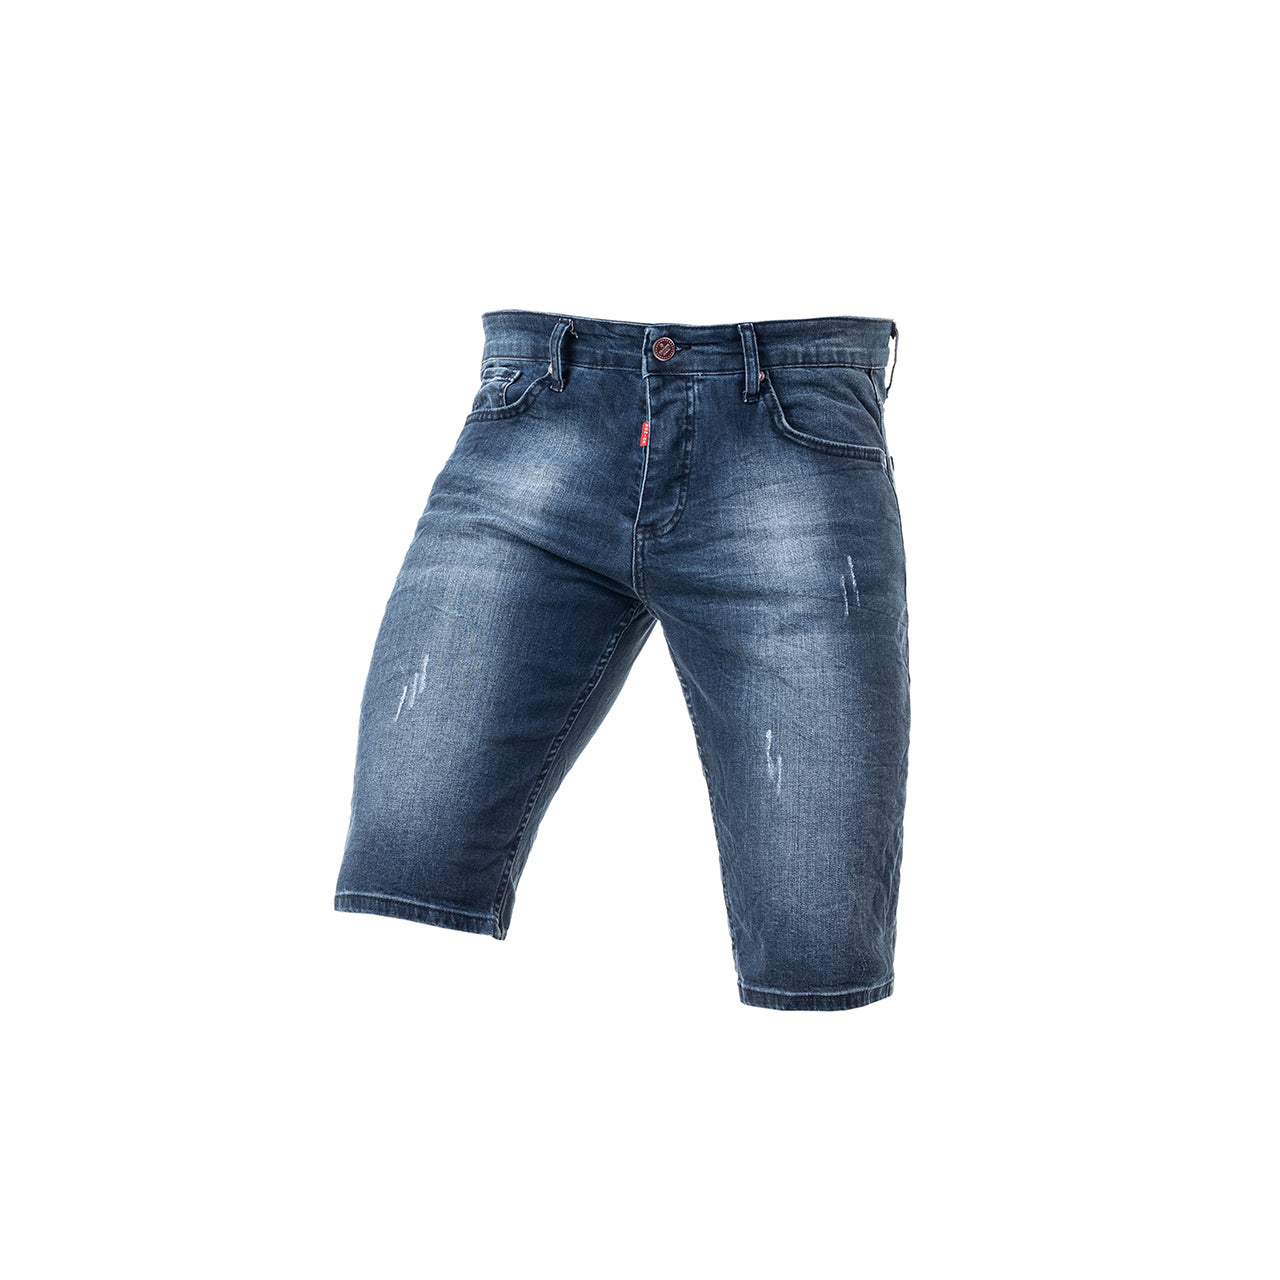 Ανδρική Βερμούδα Jeans Senior με Σκισίματα (3225) - Panda Clothing